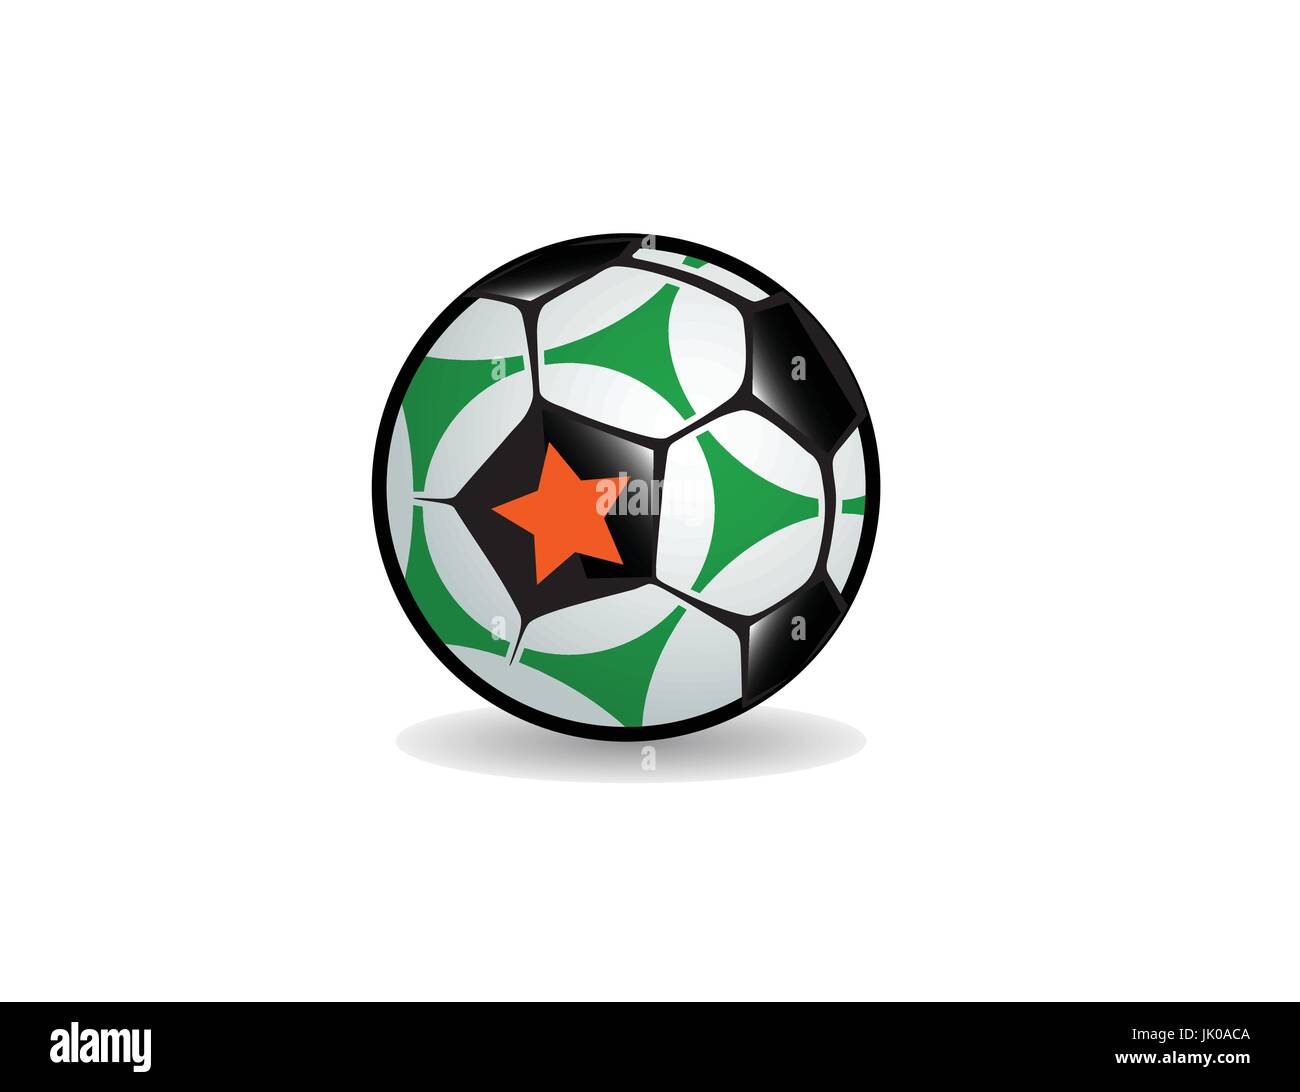 Copa Mundial de fútbol americano, el fútbol europeo pro icono gráfico del logotipo de bola Ilustración del Vector